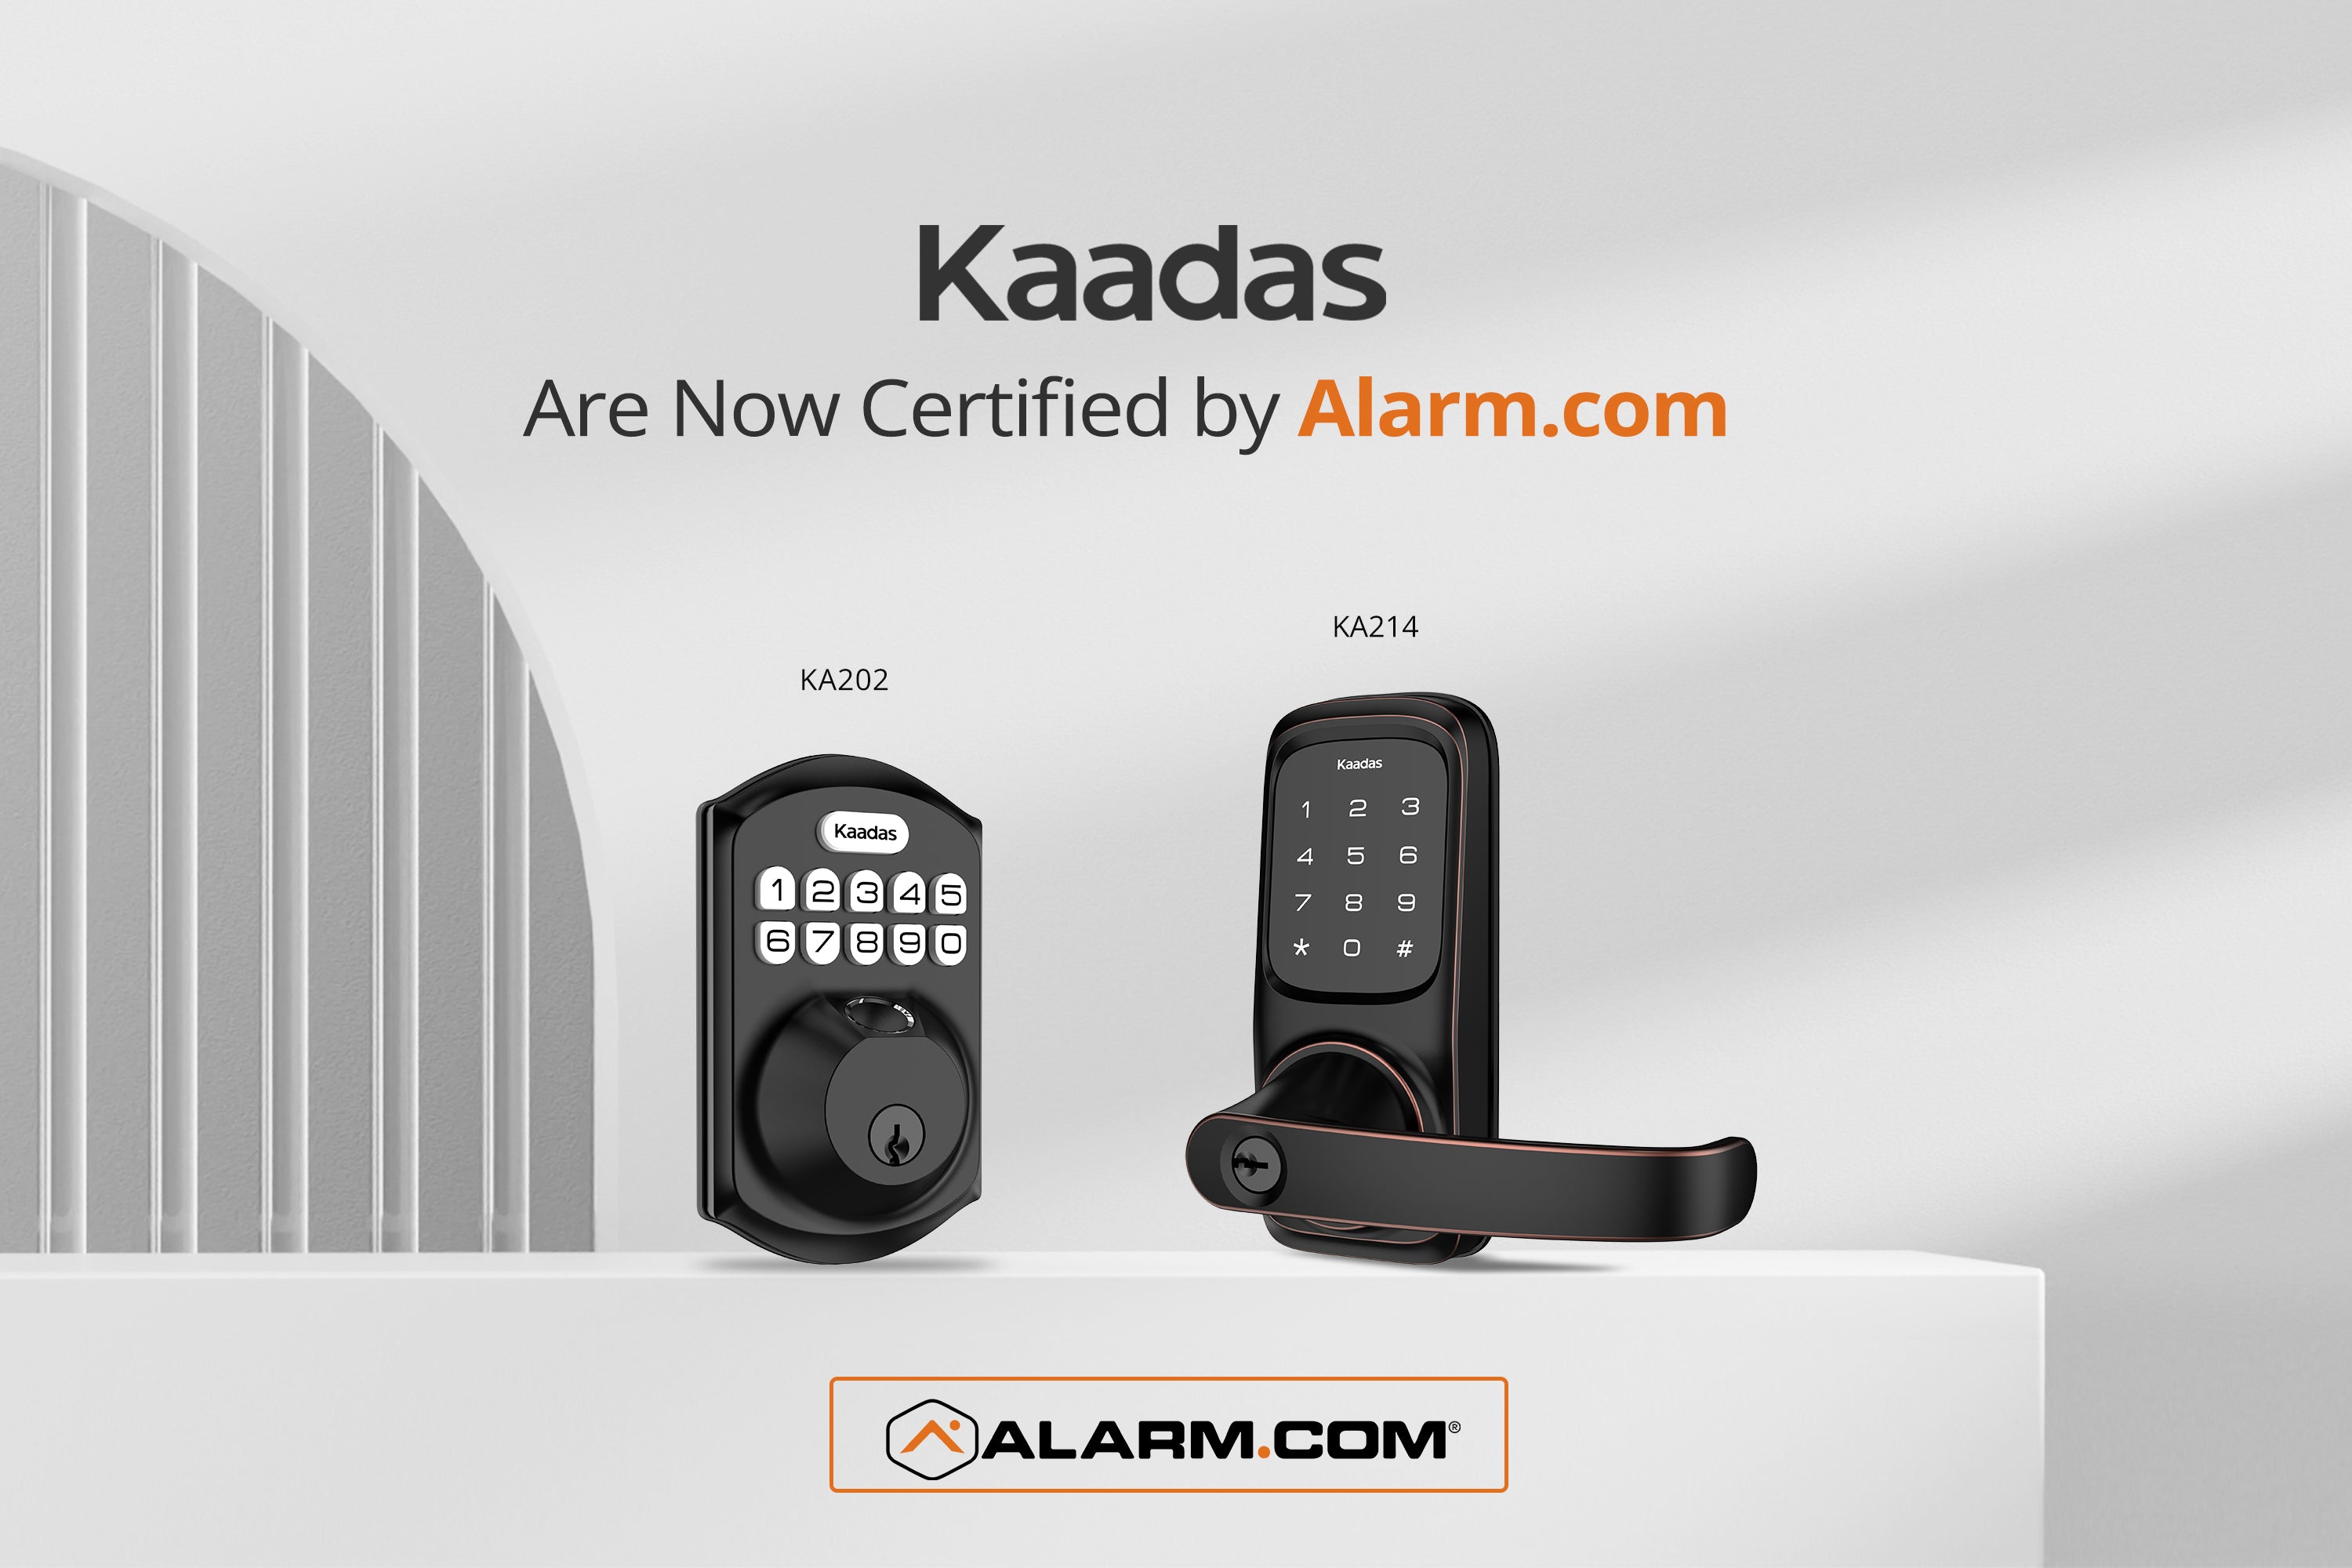 KA202, KA210, KA214 receives Alarm.com Certification